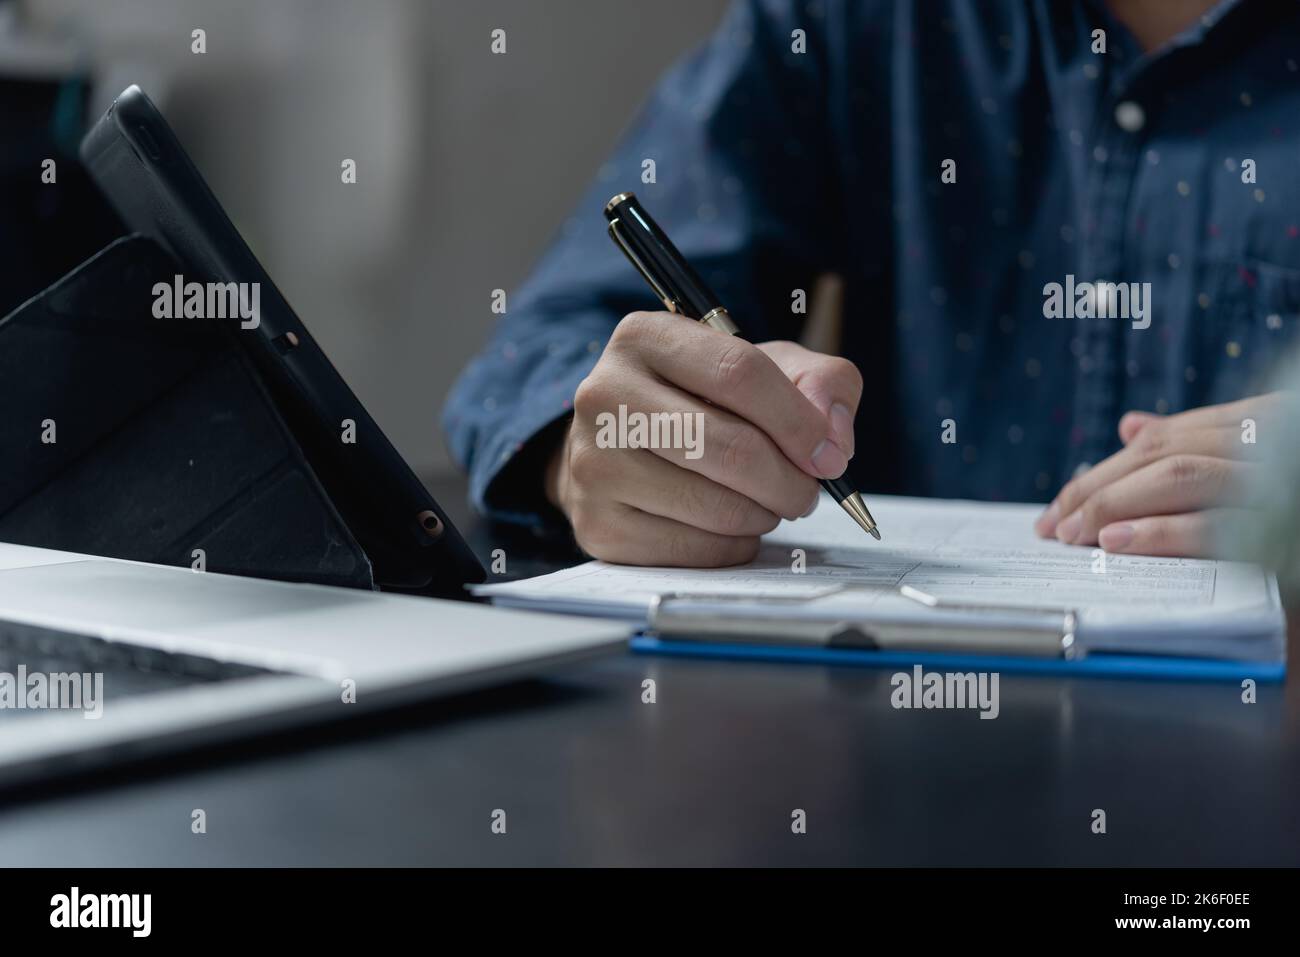 Lavoro di penna immagini e fotografie stock ad alta risoluzione - Alamy